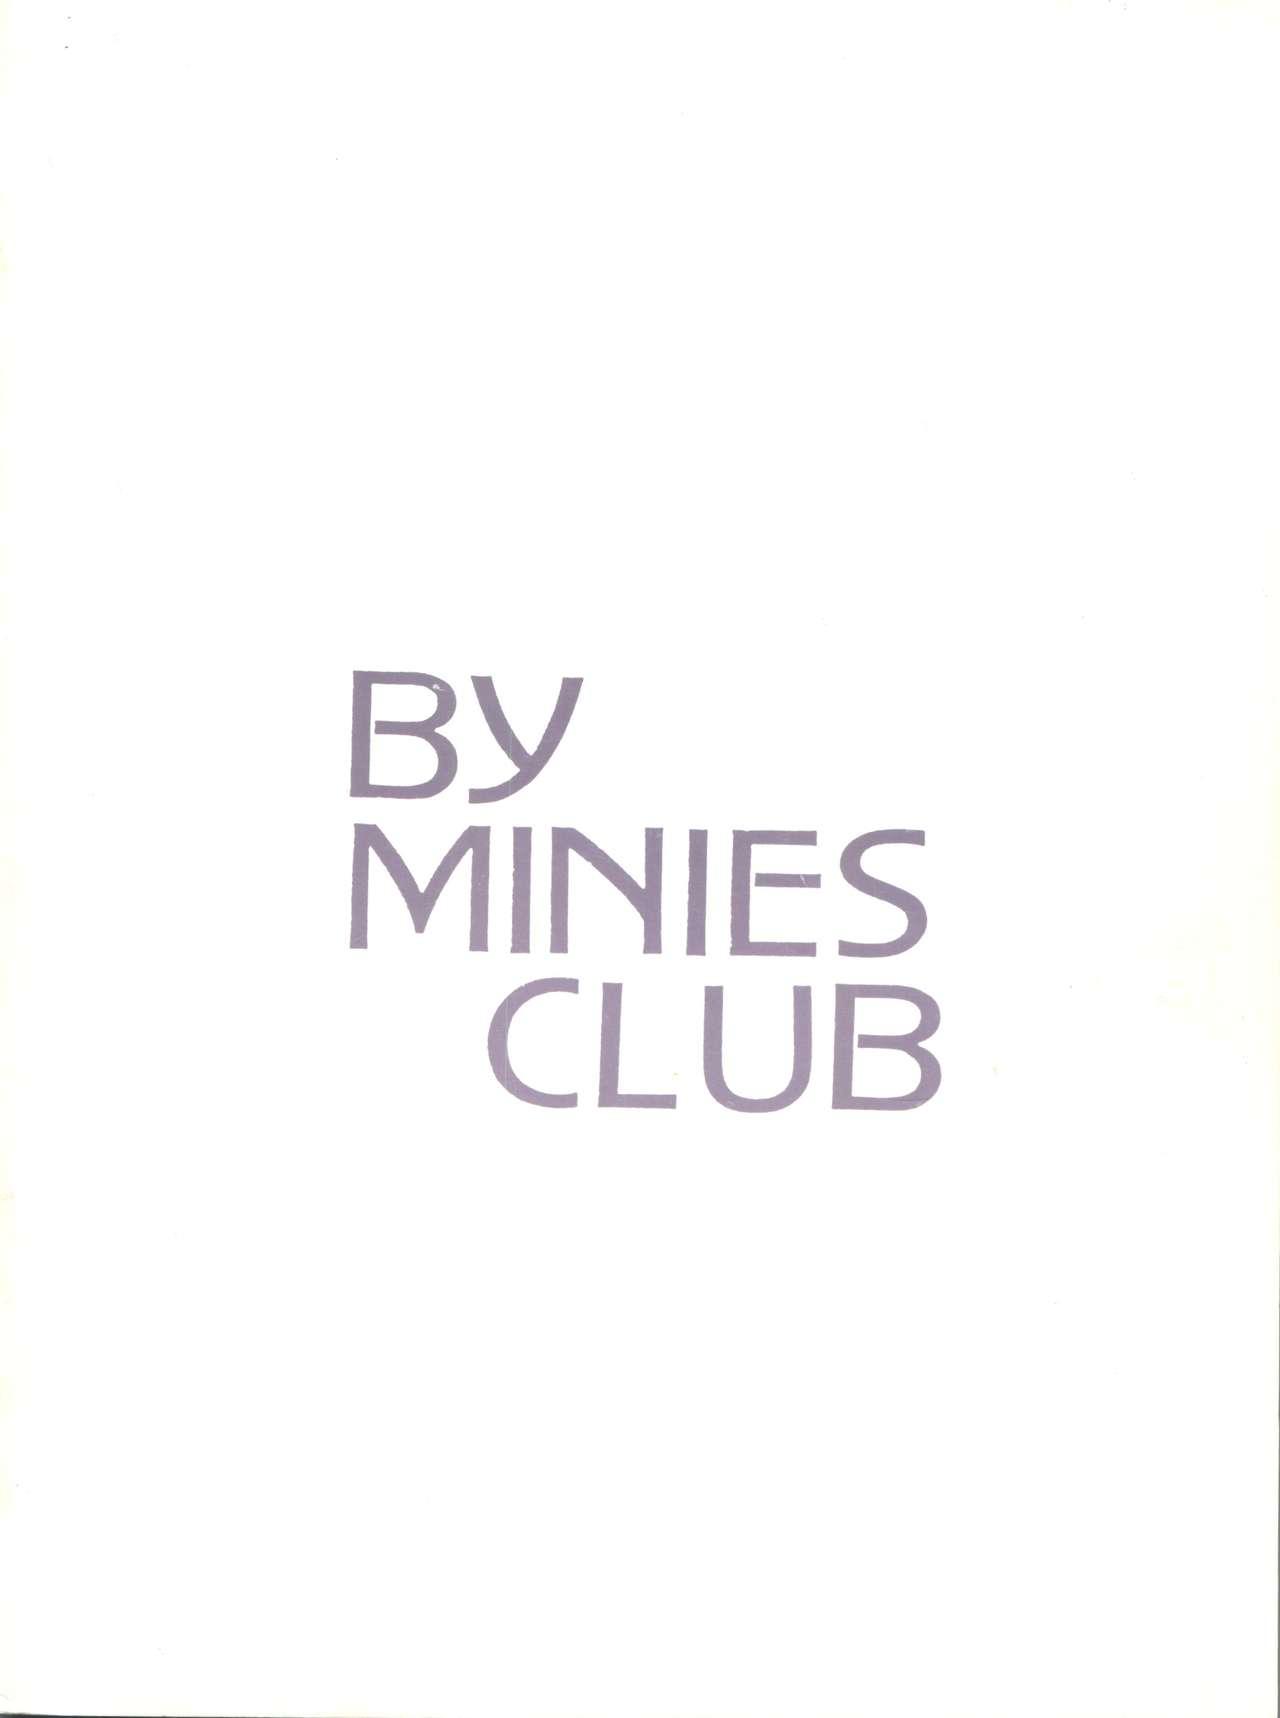 After Midnight - Minies Club 25 35